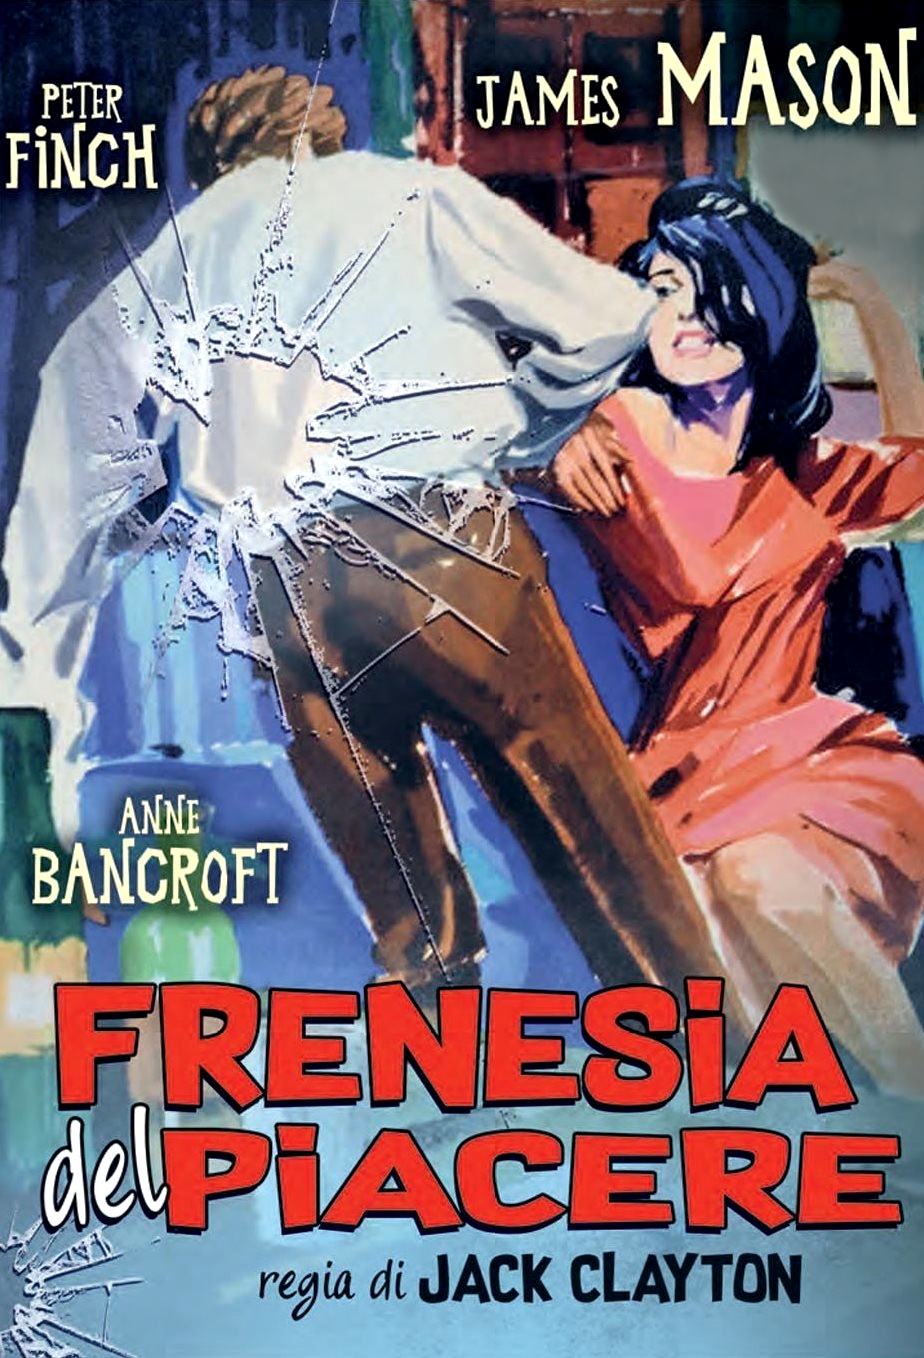 Frenesia del piacere (1964)